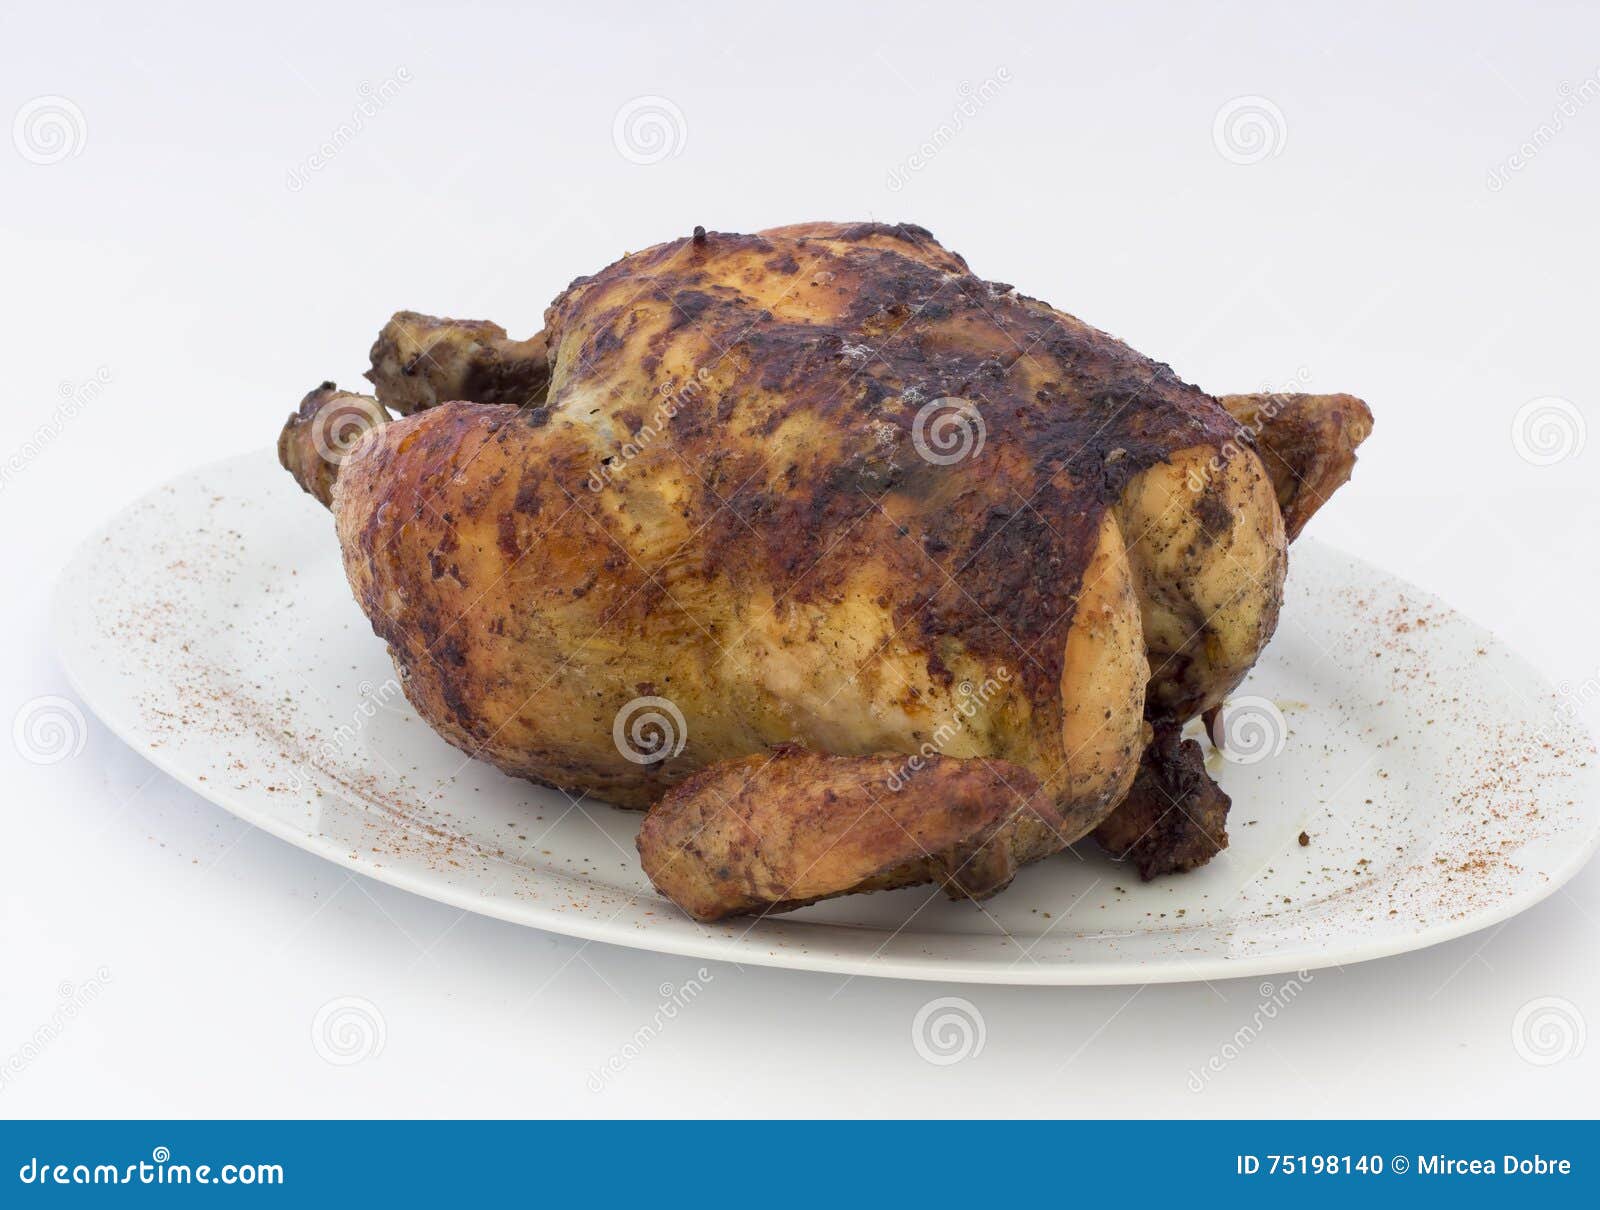 grilled chicken (pollo a la brasa) on white plate.